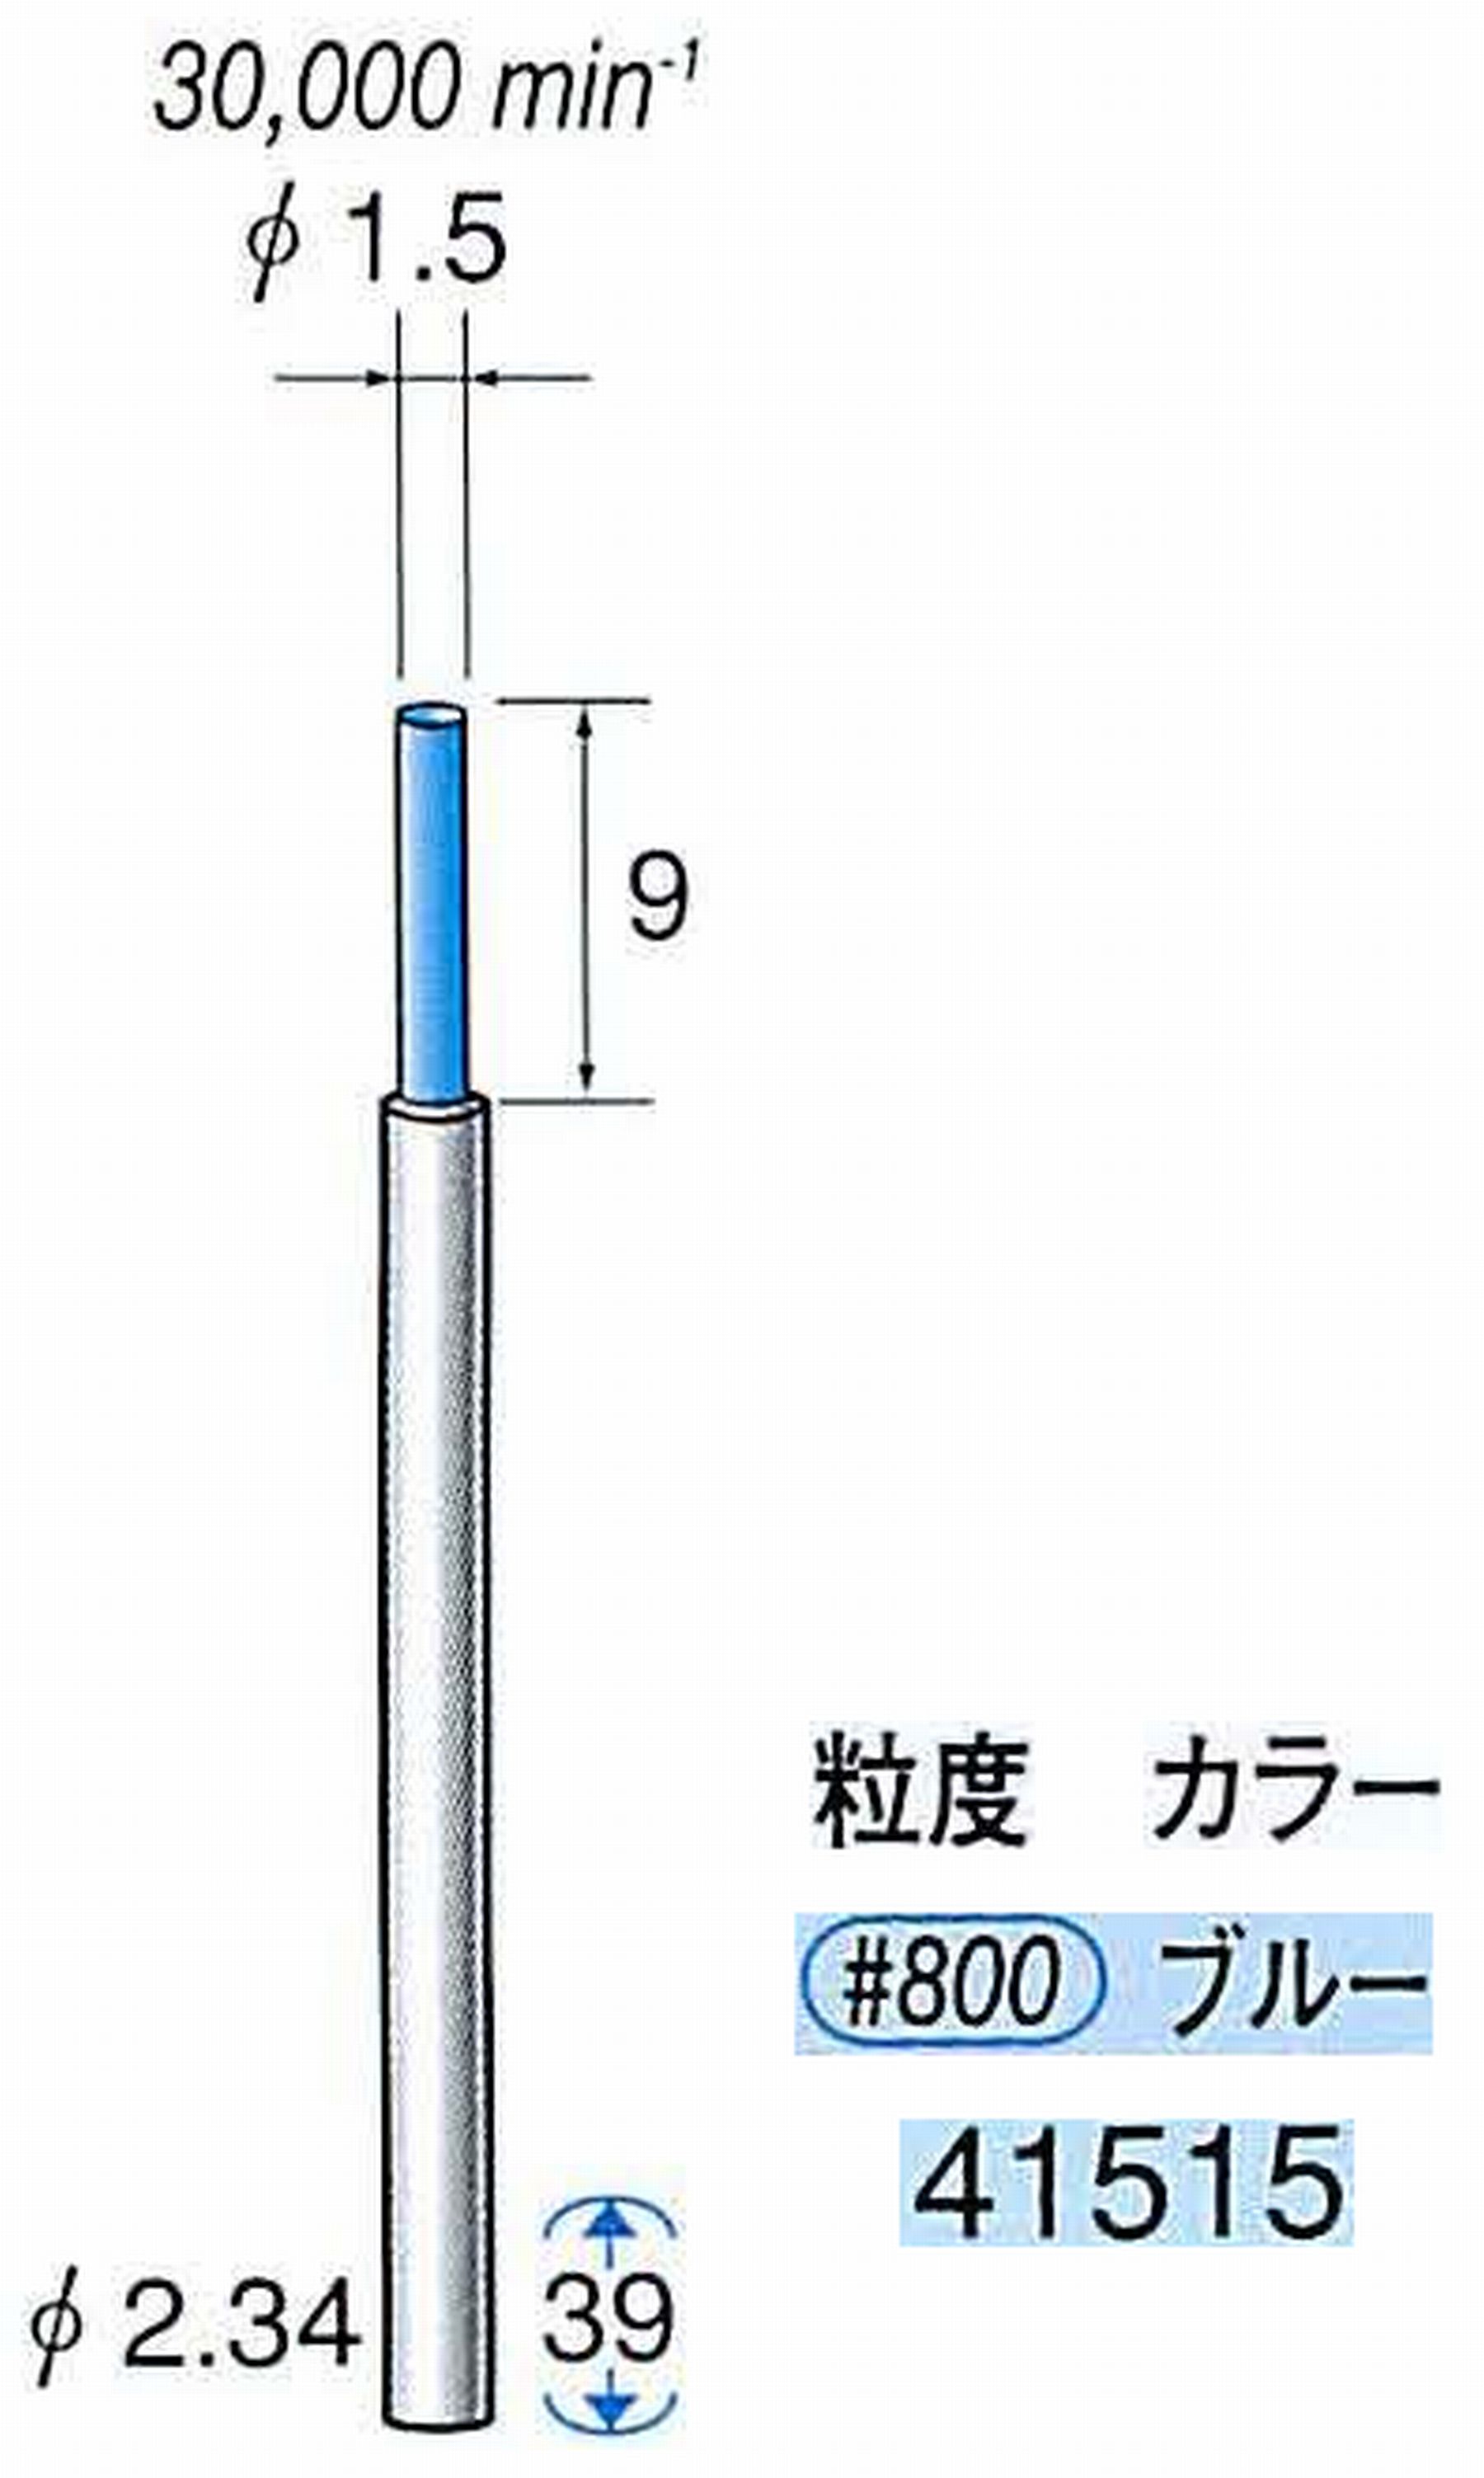 ナカニシ/NAKANISHI セラファイバー精密軸付砥石(カラー ブルー) 軸径(シャンク) φ2.34mm 41515